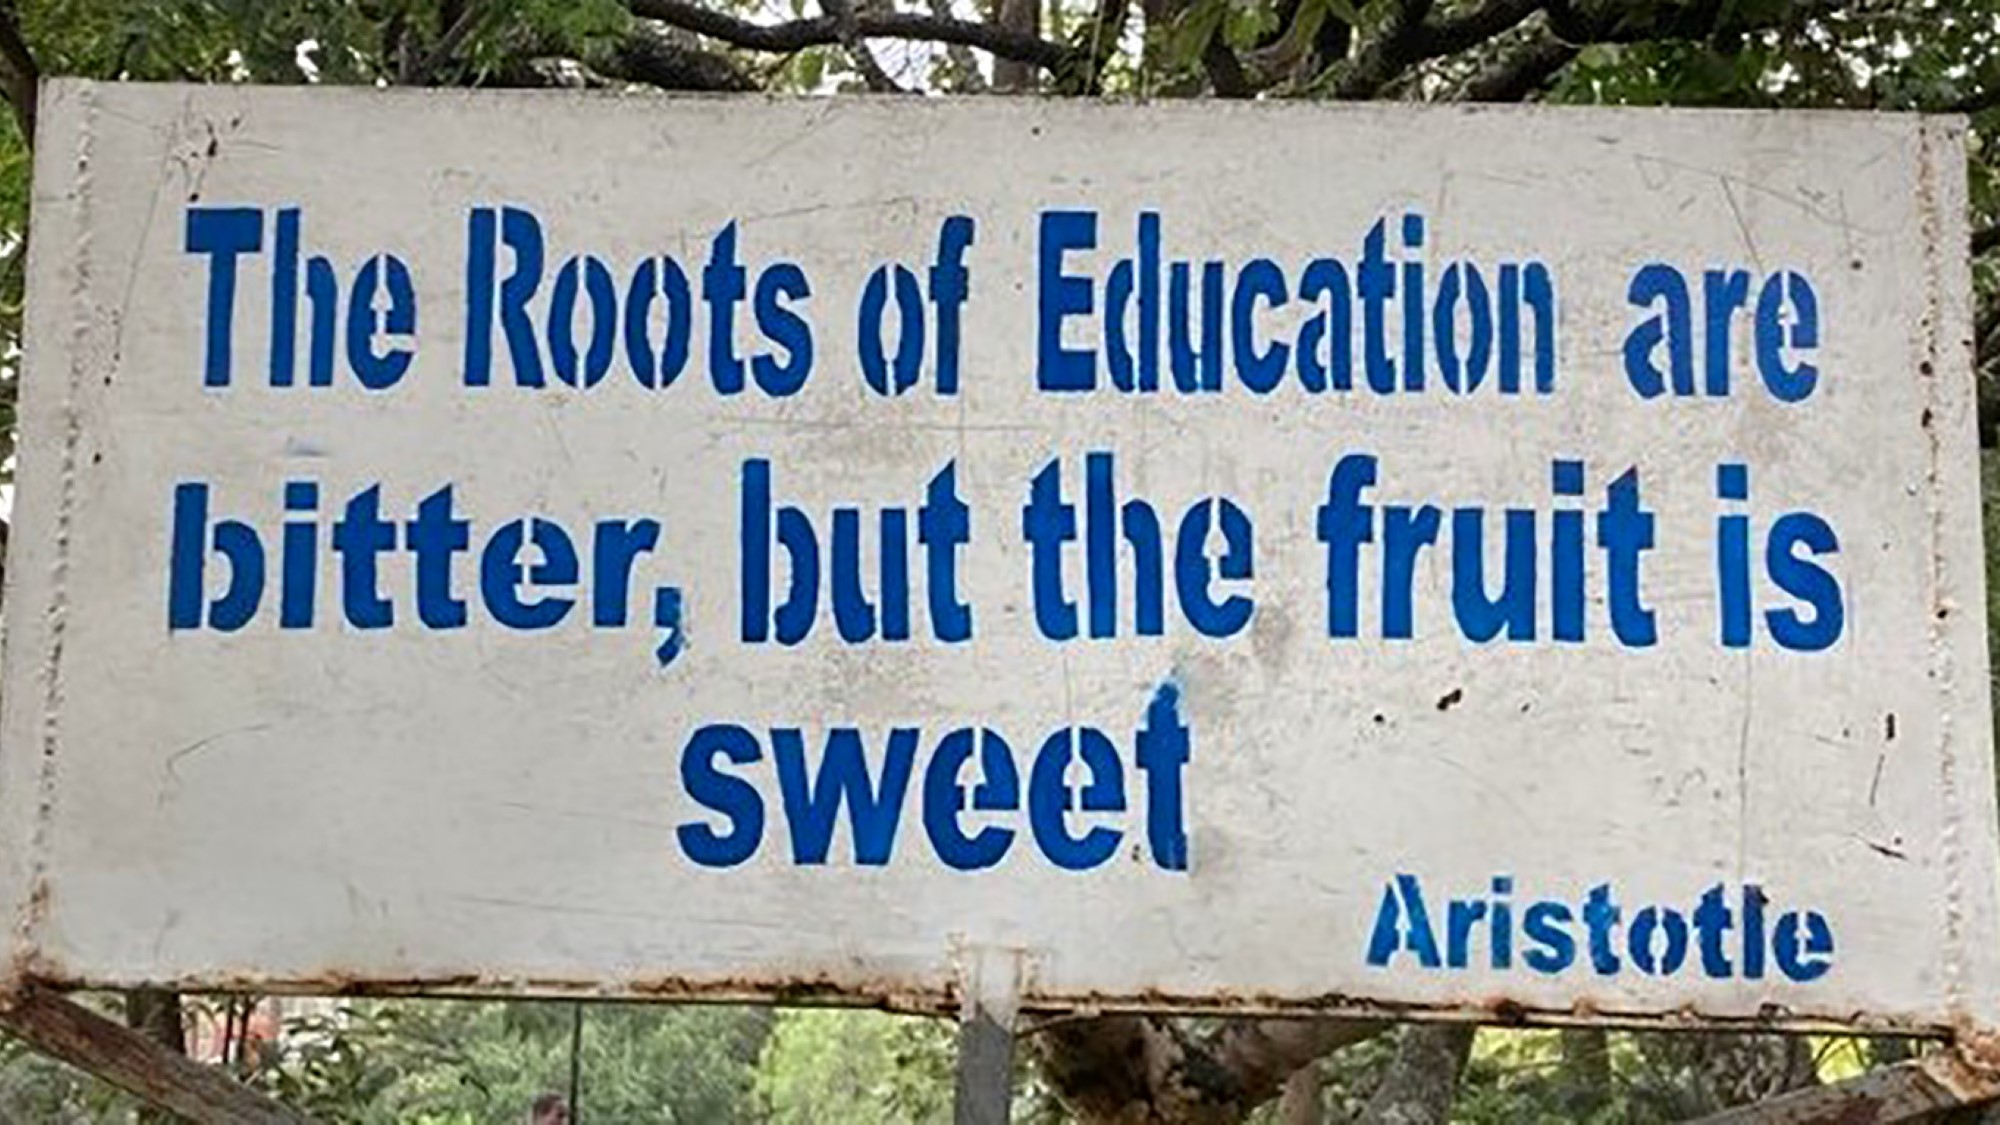 Skilt med teksten "The roots of education are bitter, but the fruit is sweet." Sitat av Aristoteles.